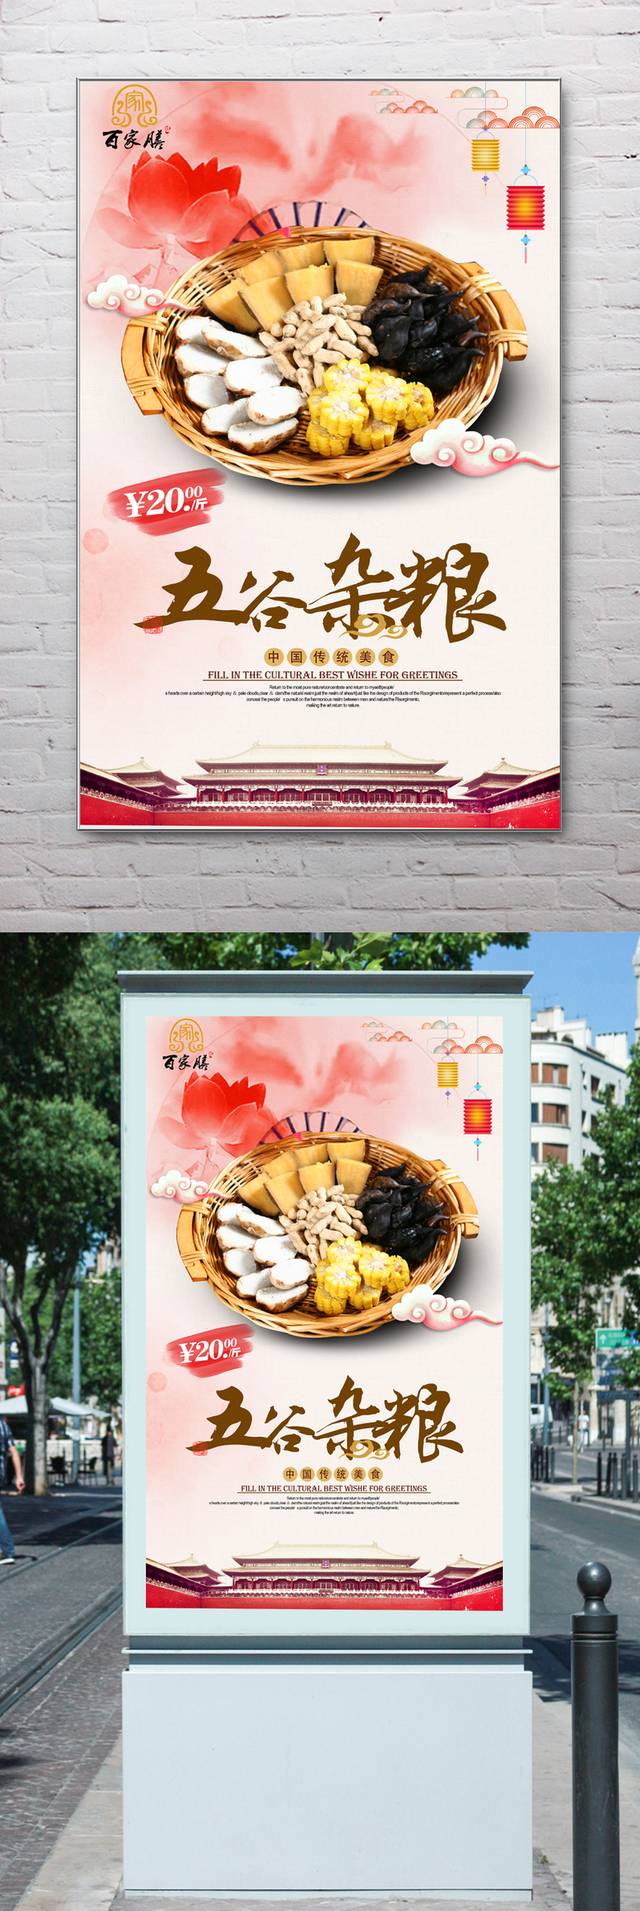 中式五谷杂粮宣传海报设计